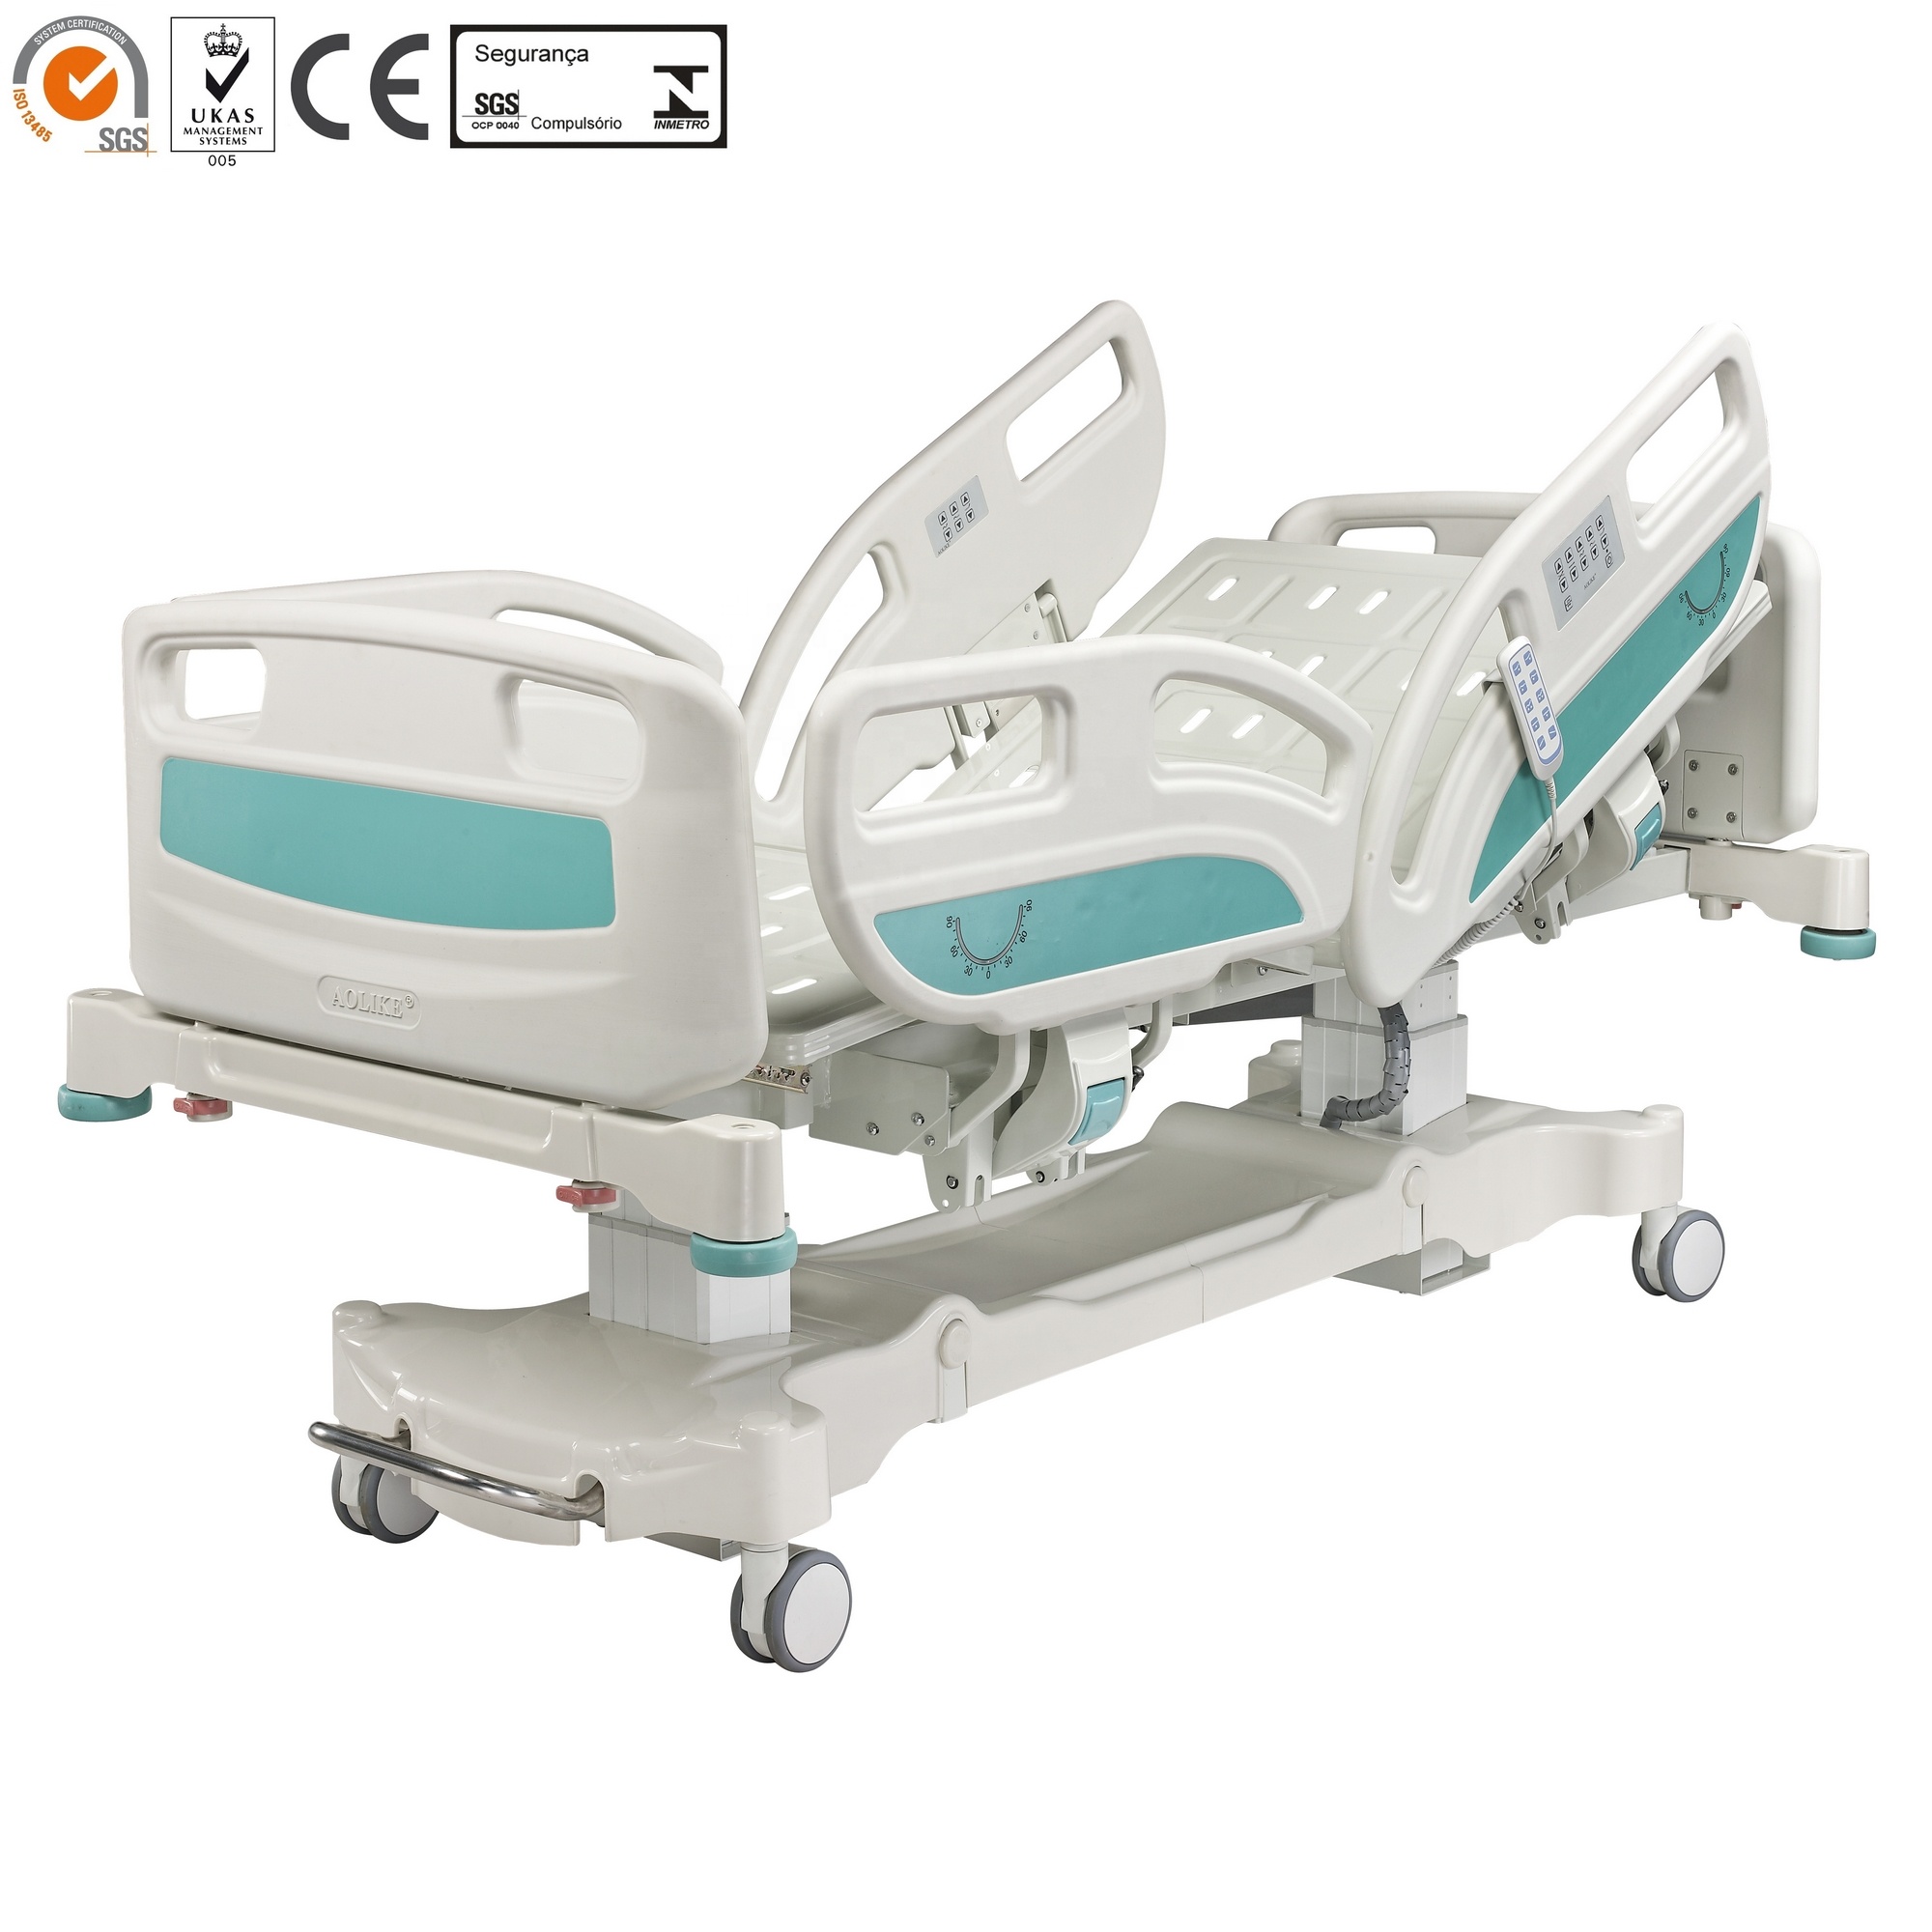 Advanced 5 Función CE ISO Calidad eléctrica ICU CAMAS DE HOSPITAL ITALIANDO METAL ICU Habitación 1 año, 1 año 240kgs Posición de la silla sin usar